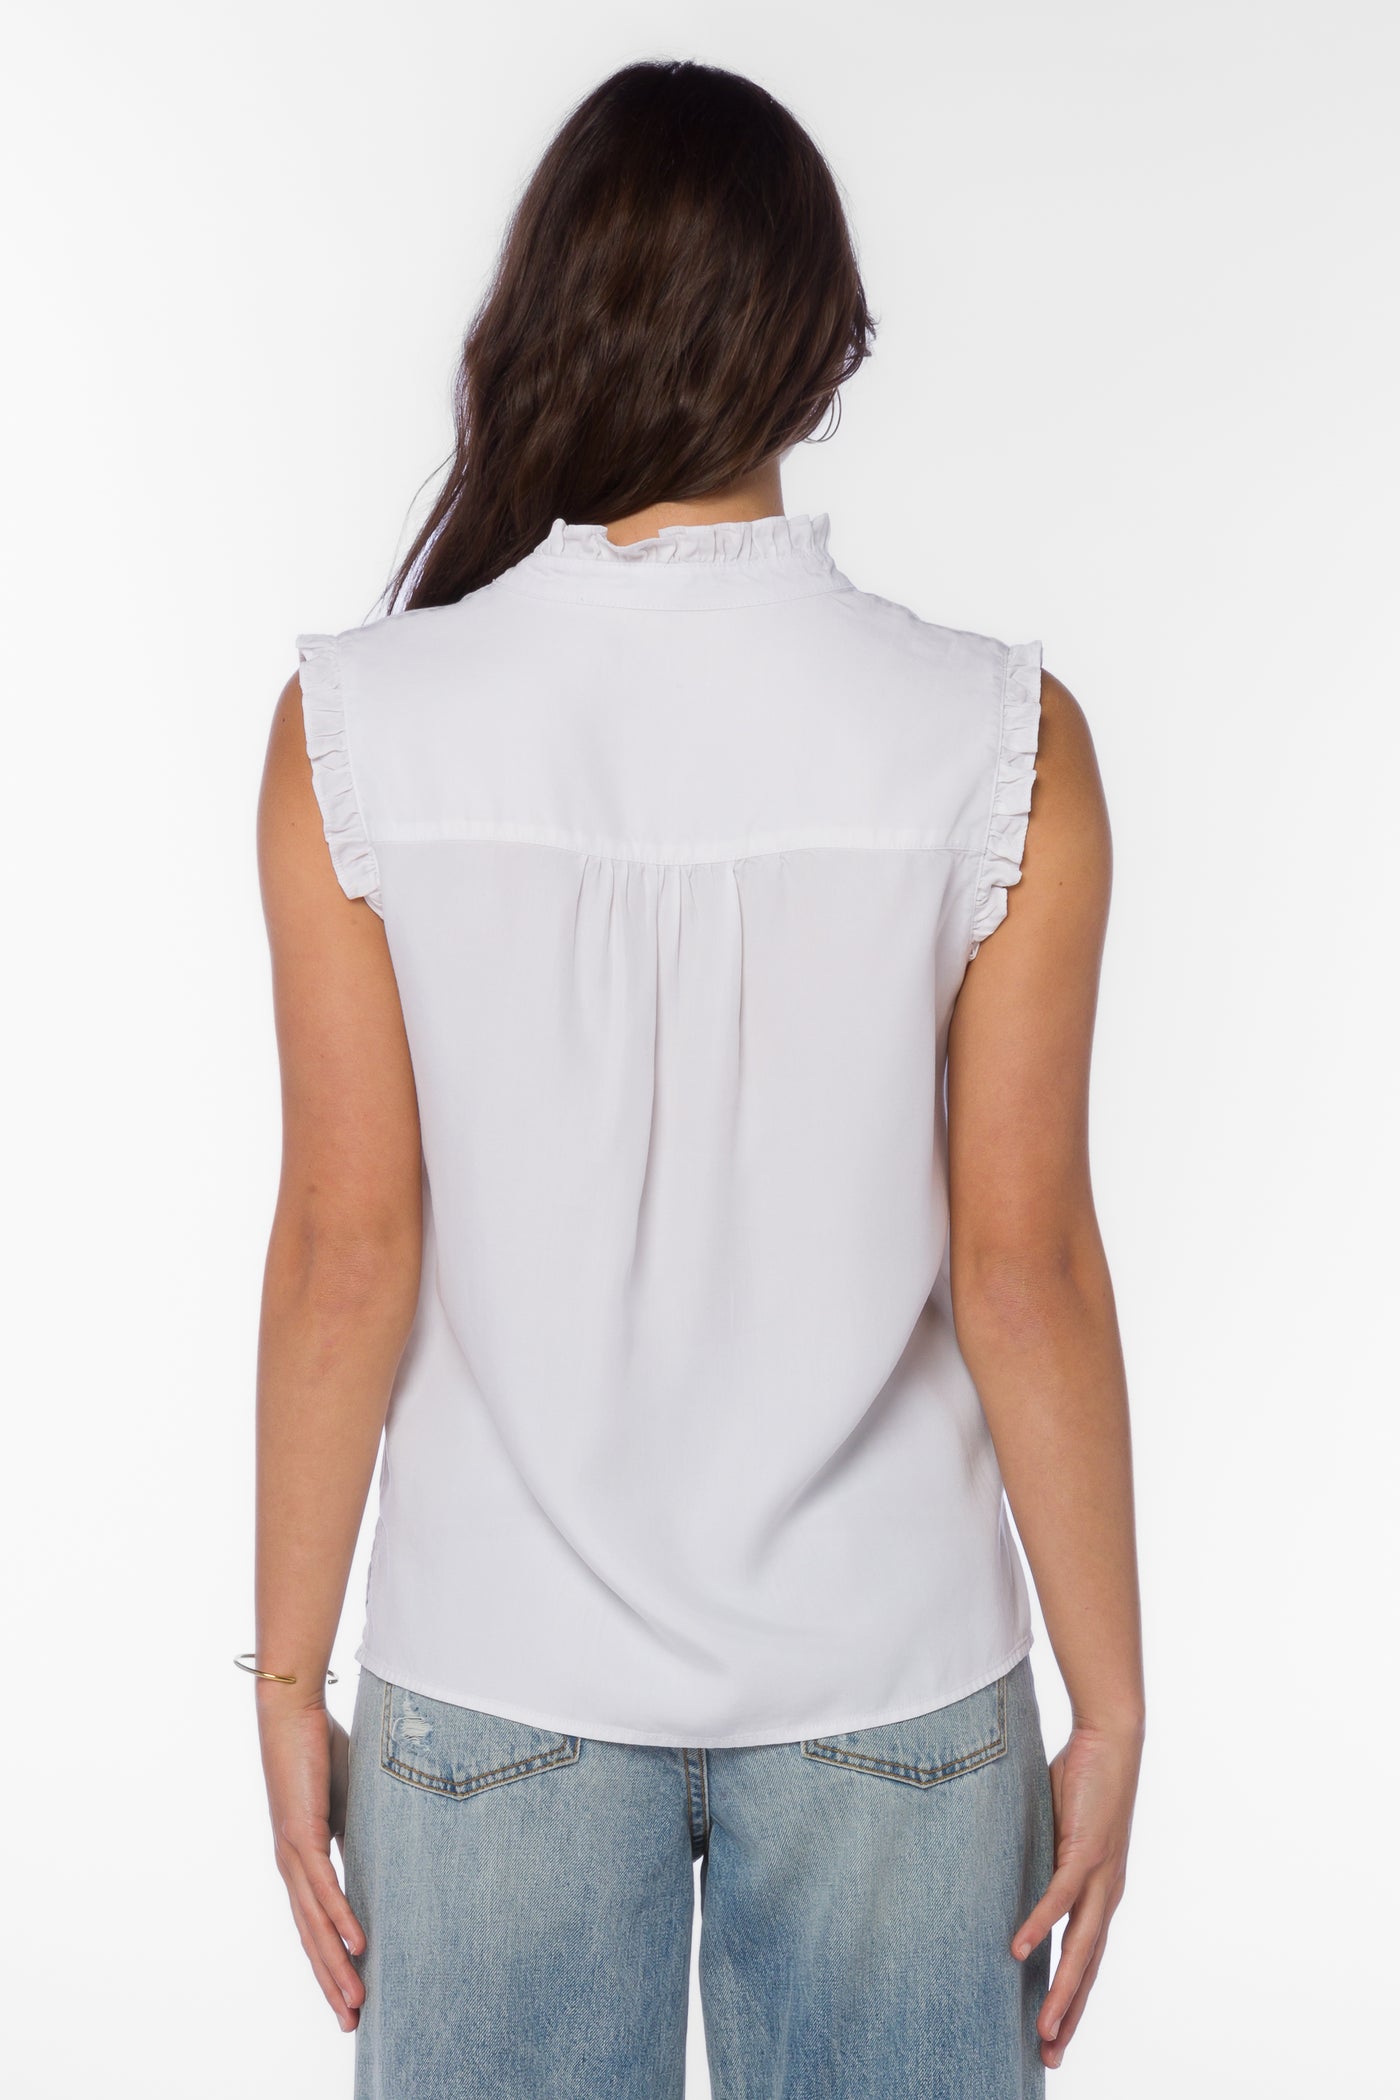 Dana White Shirt - Tops - Velvet Heart Clothing